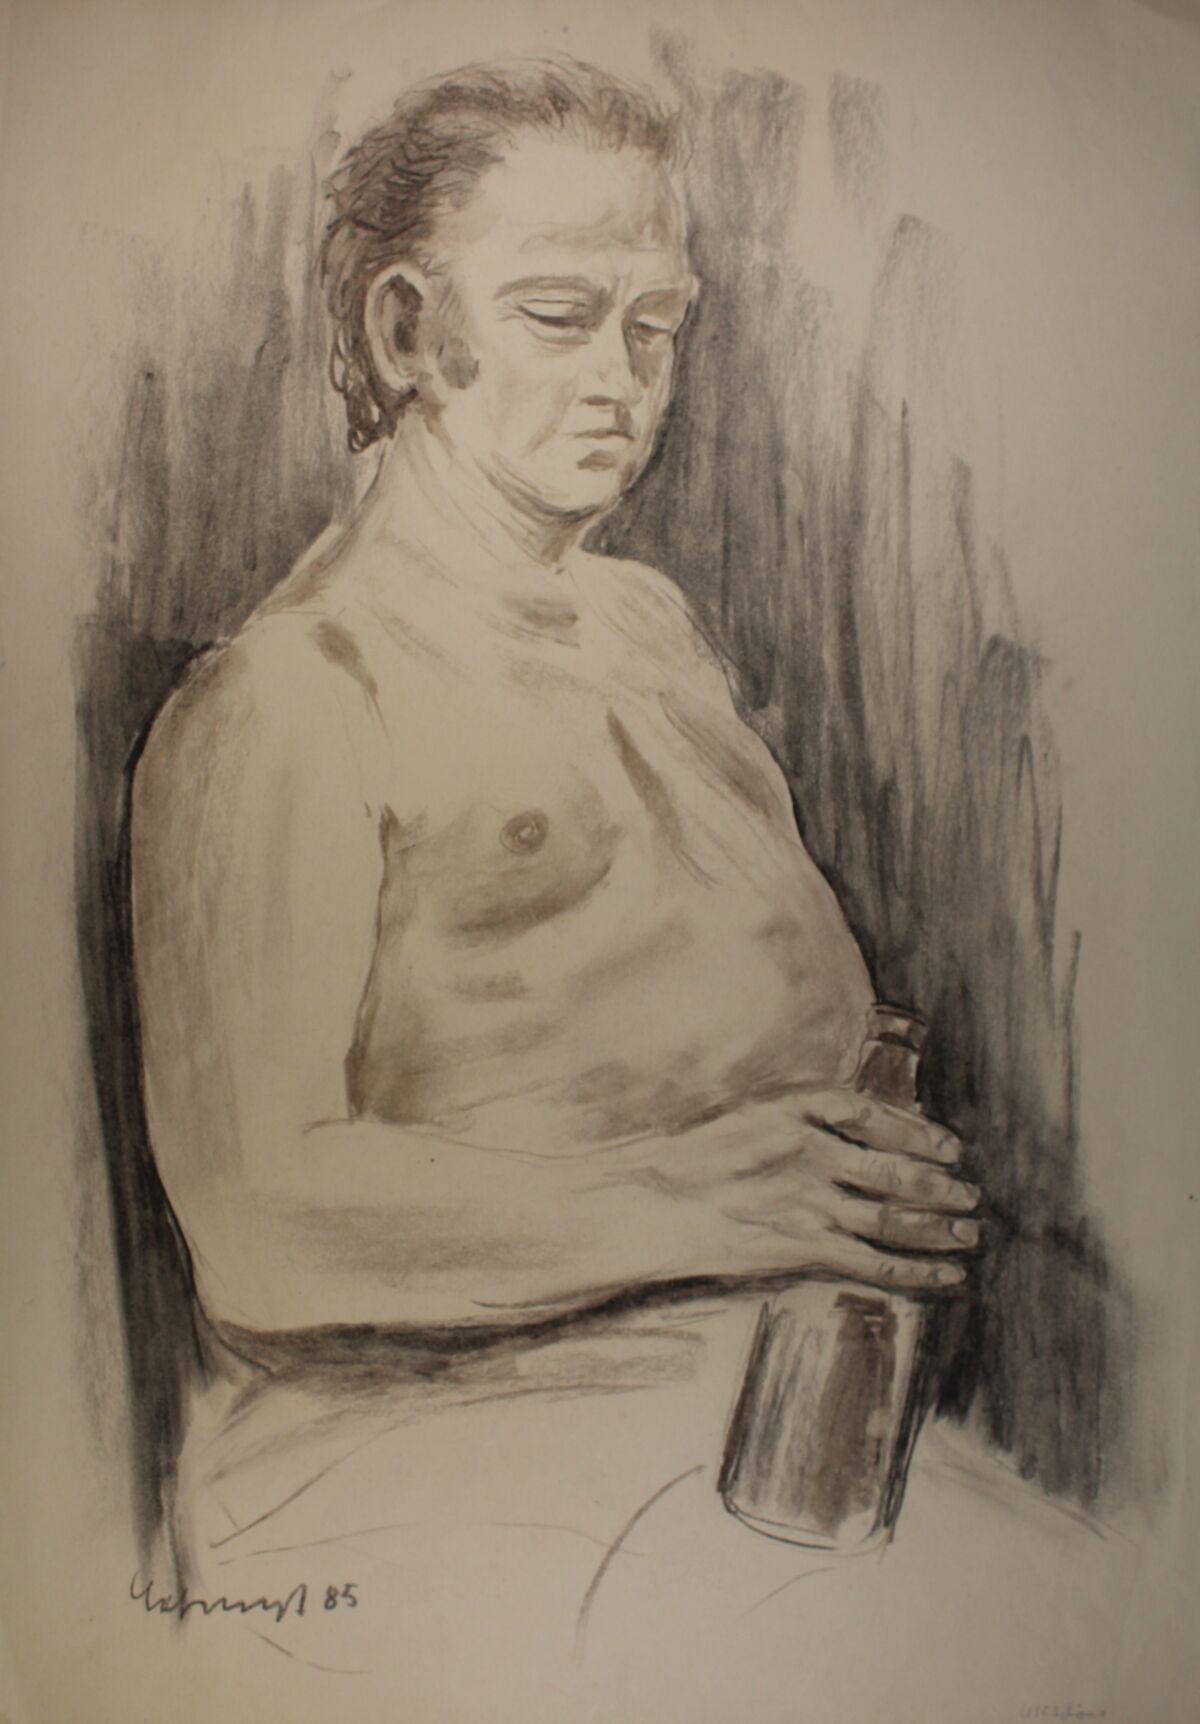 Das mit Kohle gezeichnete Halbbild zeigt einen sitzenden Mann mit freiem Oberkörper, eine Flasche in der Hand haltend.